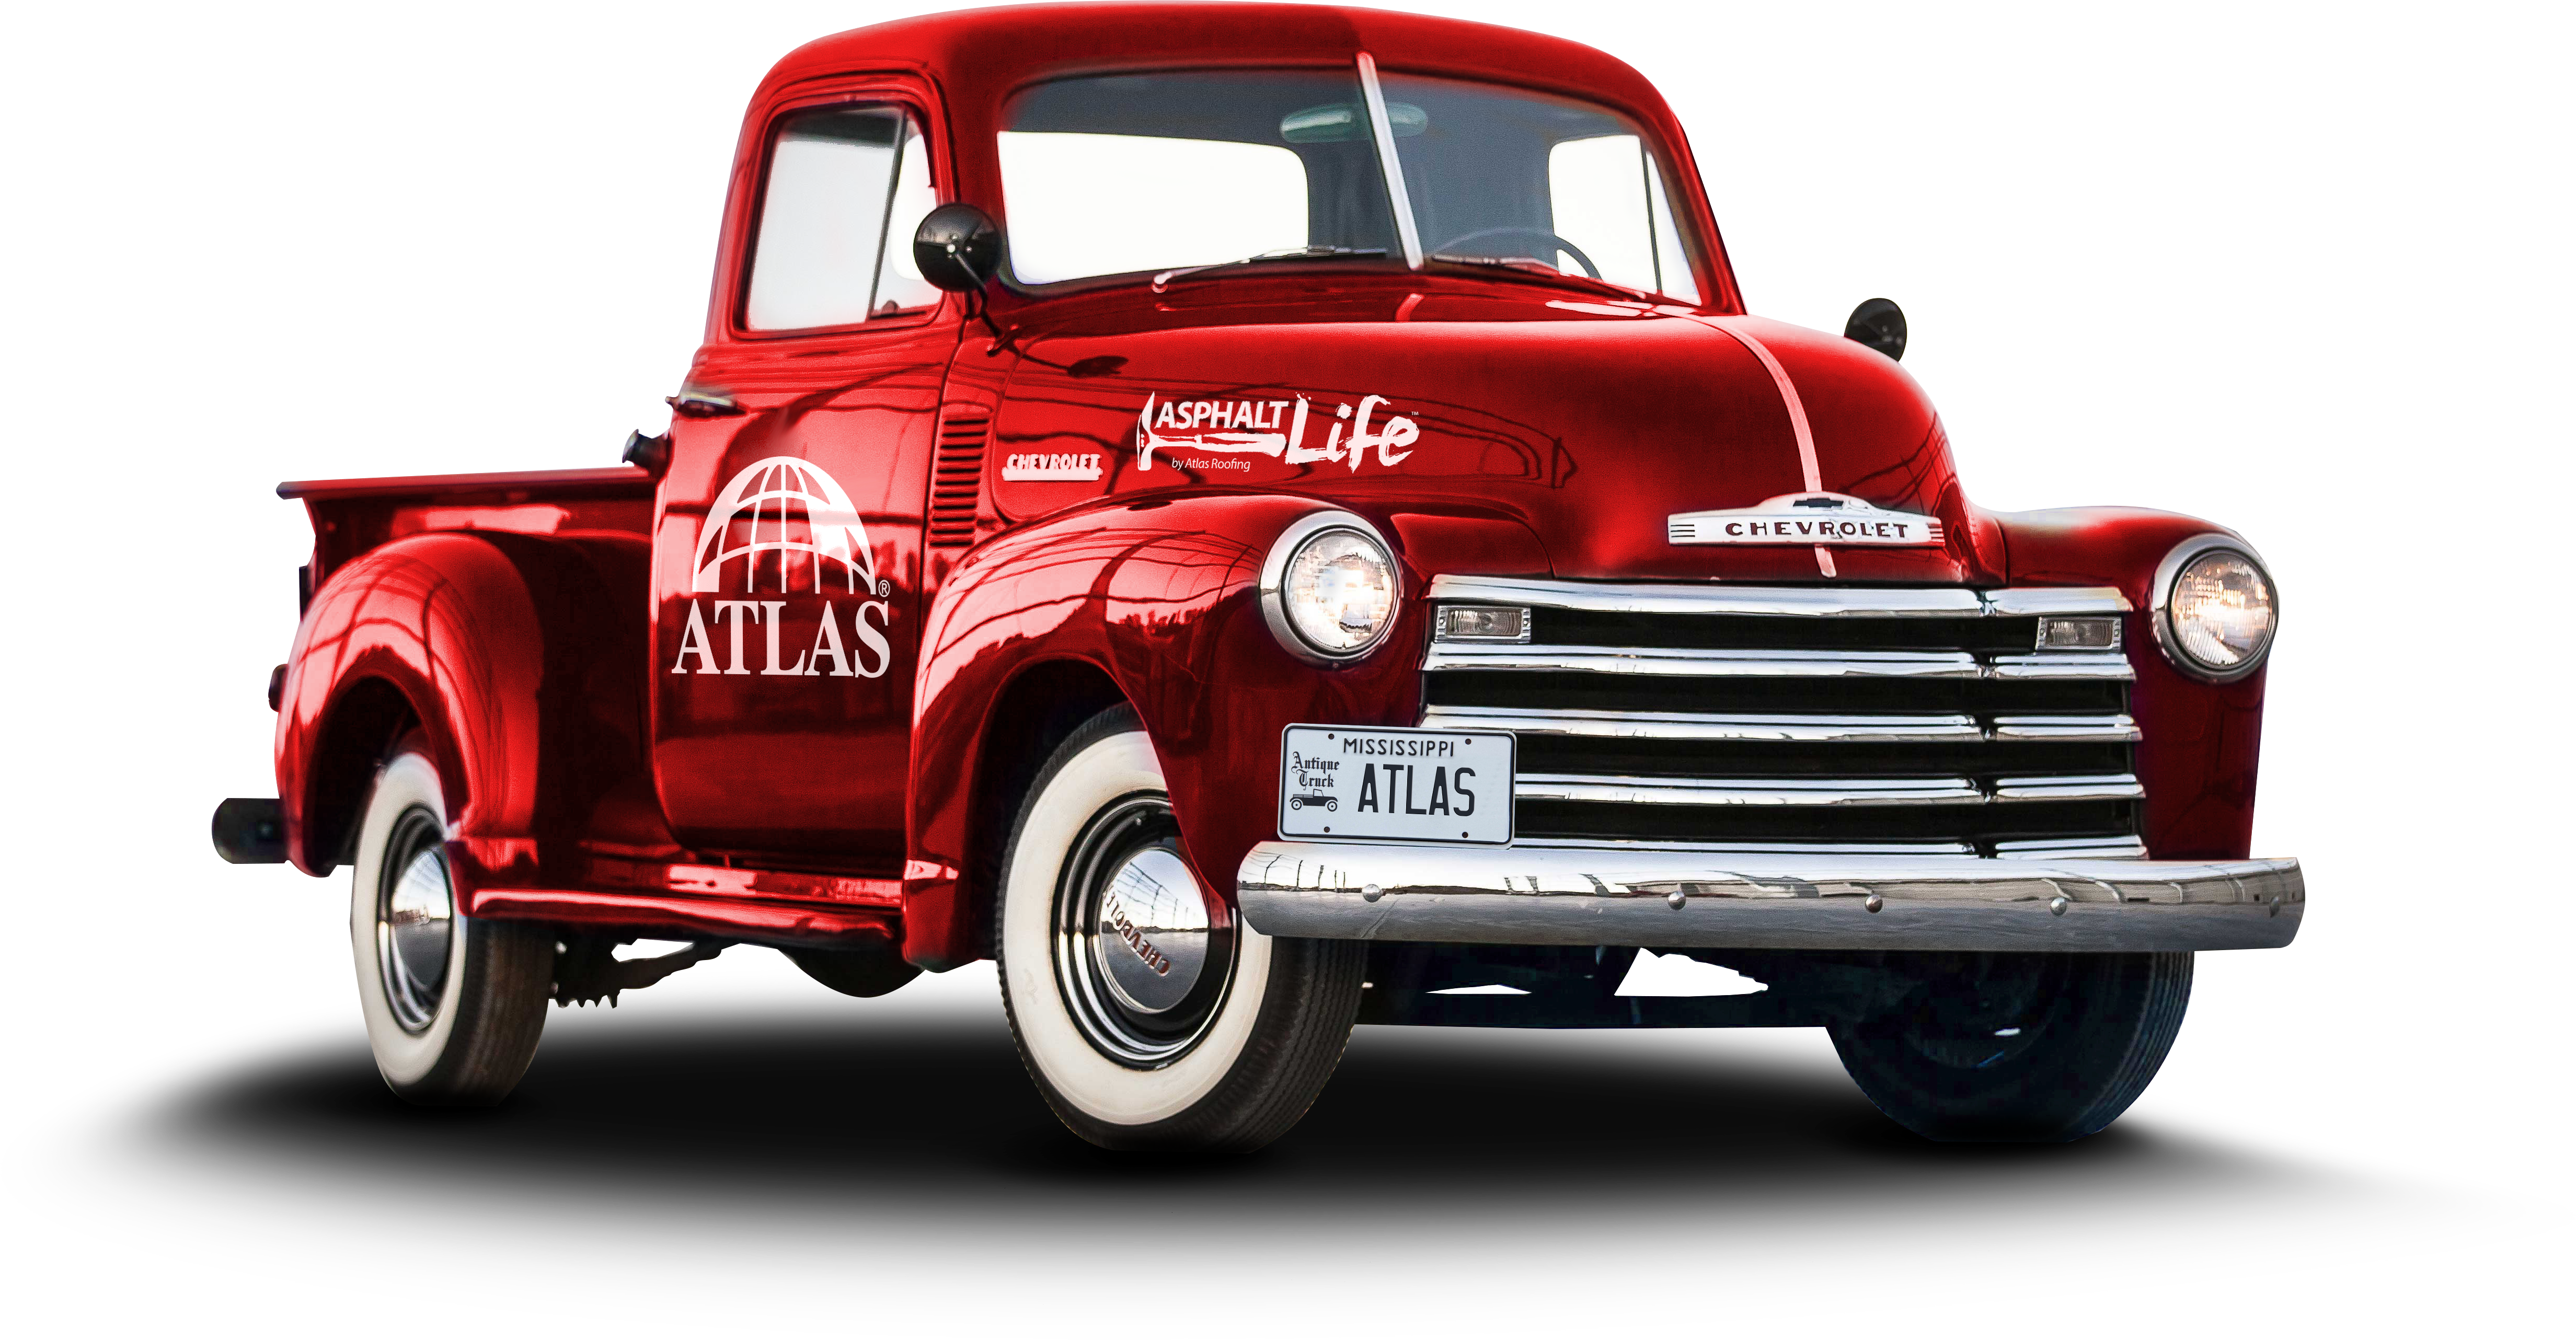 Asphalt Life Truck Giveaway - Atlas Roofing Asphalt Life Truck Clipart (4928x2564), Png Download